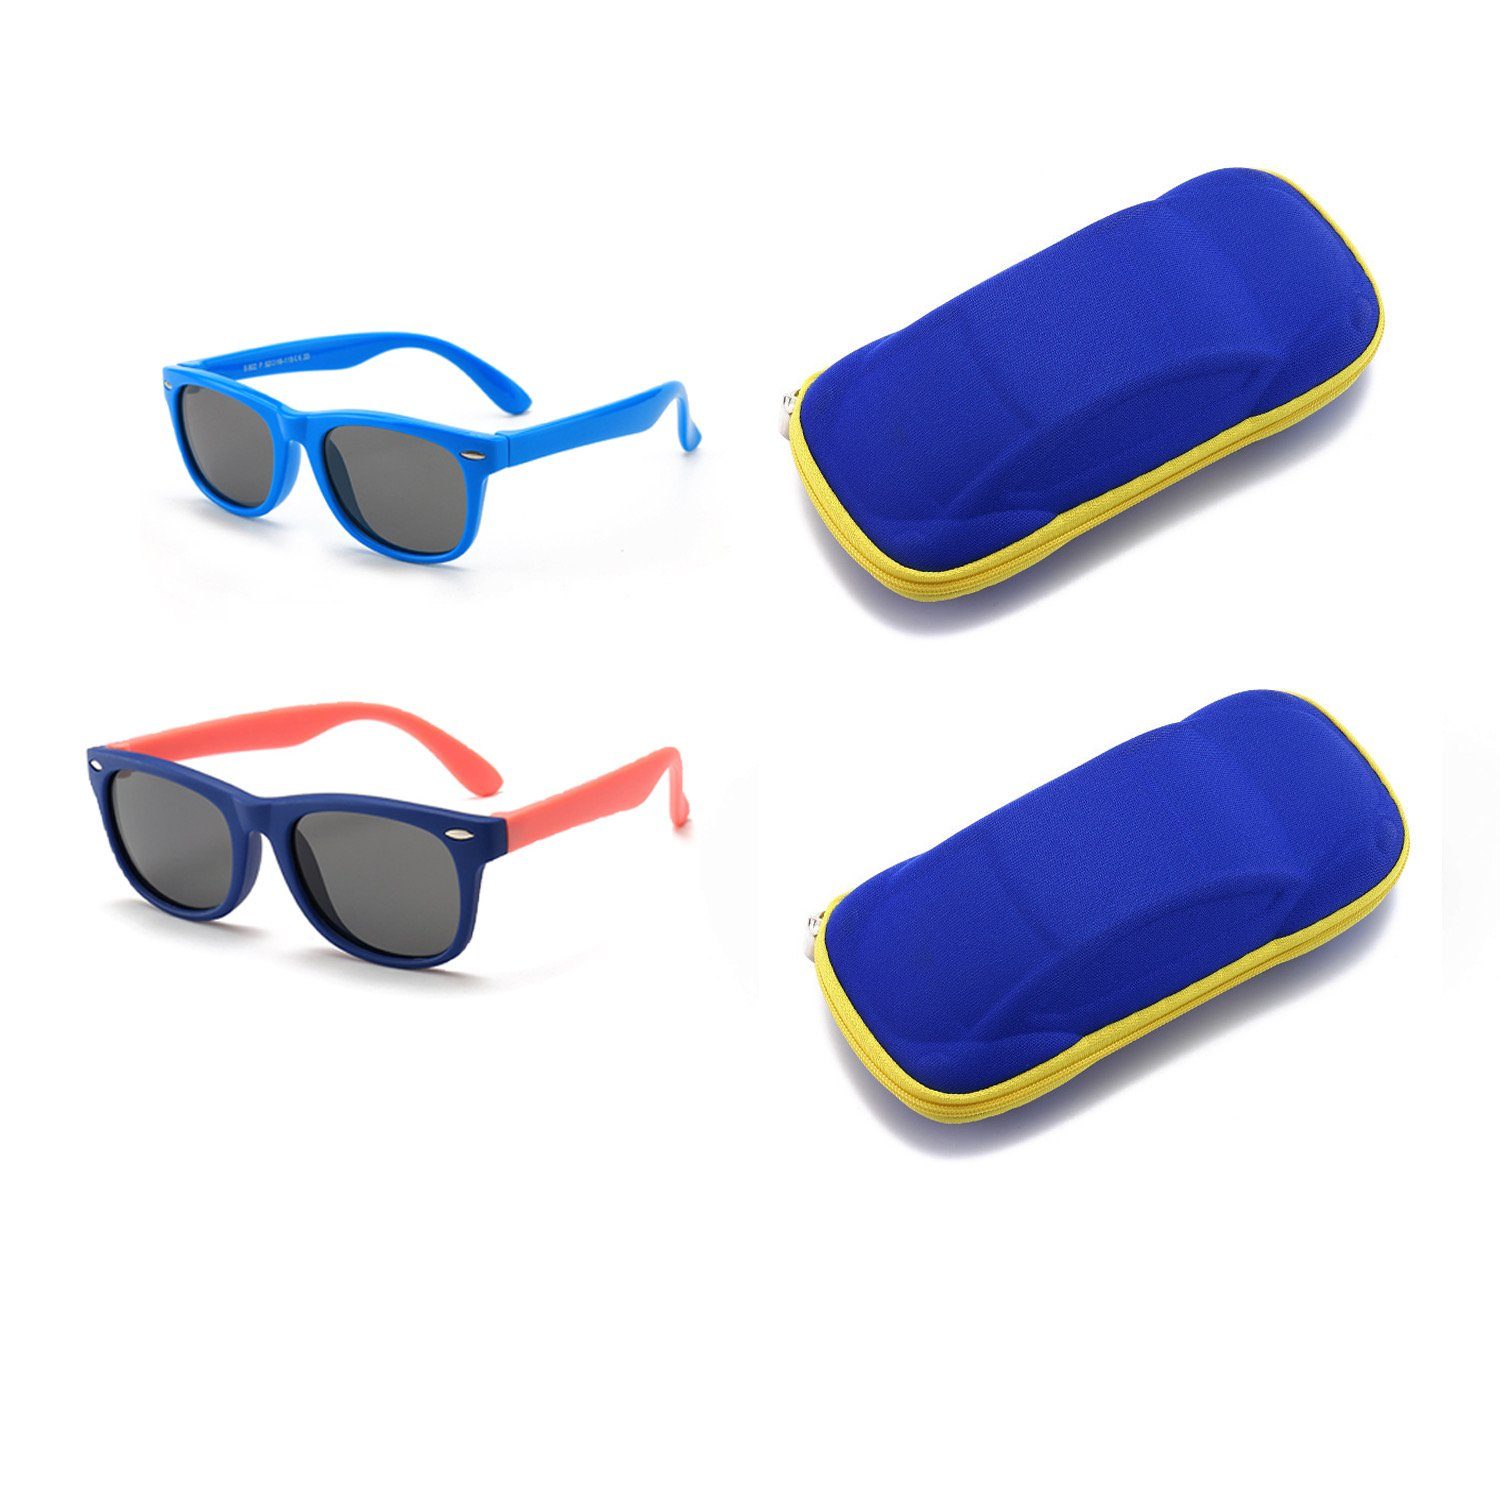 mit Olotos Sonnenbrille Blau+Dunkelblau Gummi Brille Sonnenbrille Jungen für UV400 Schutz 100% Brillenetui Mädchen Kinder